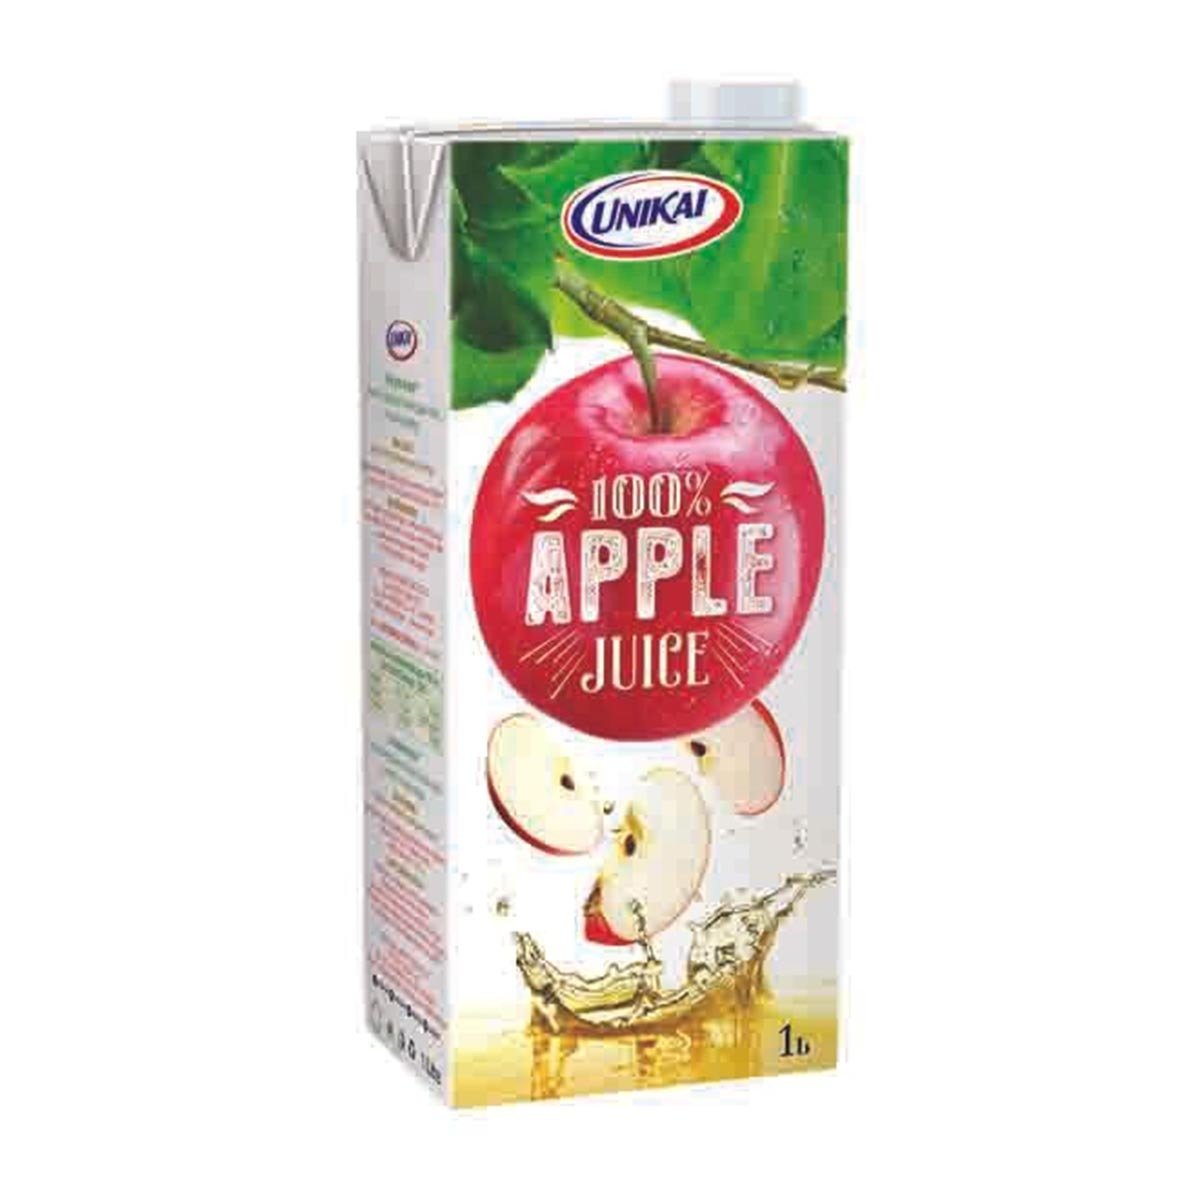 Unikai 100% Apple Juice 1 Litre